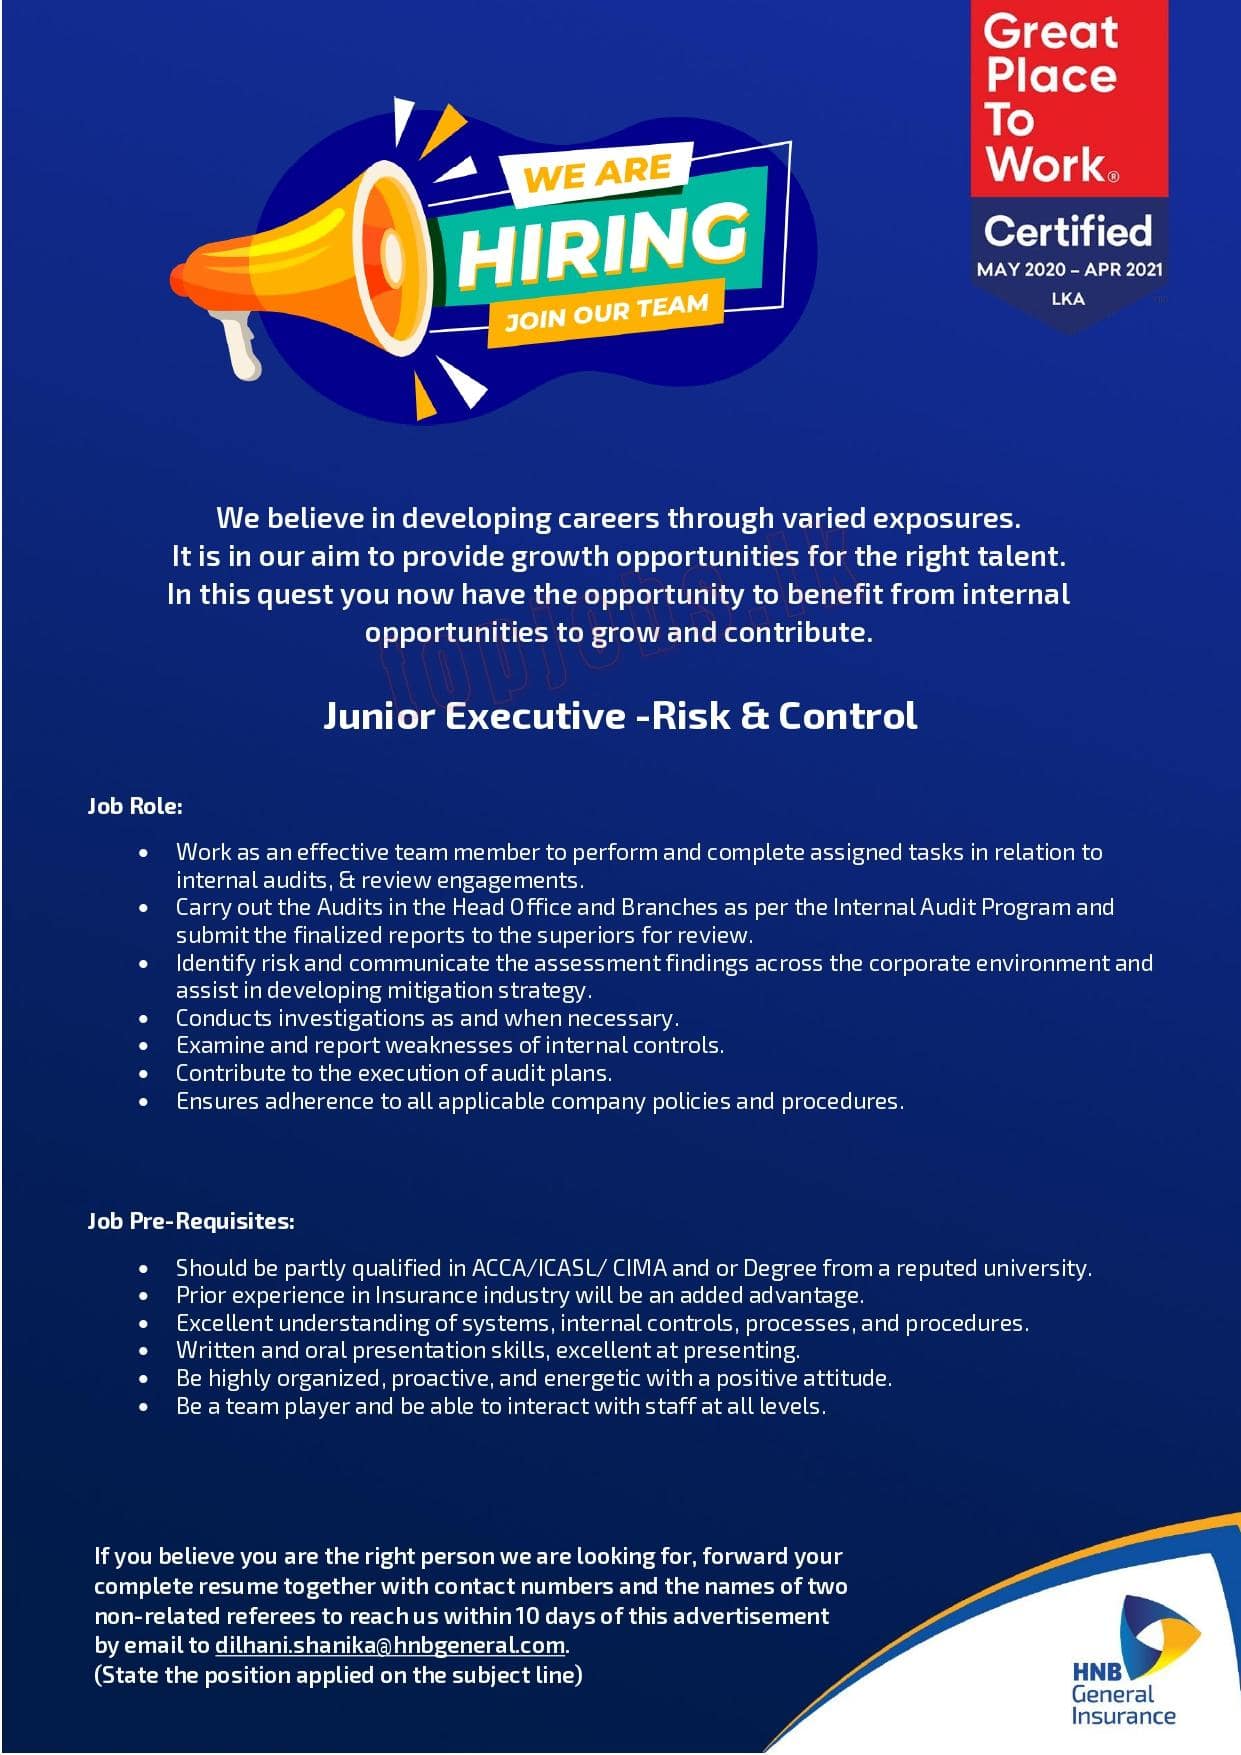 Junior Executive - Risk & Control - HNB General Insurance Jobs Vacancies